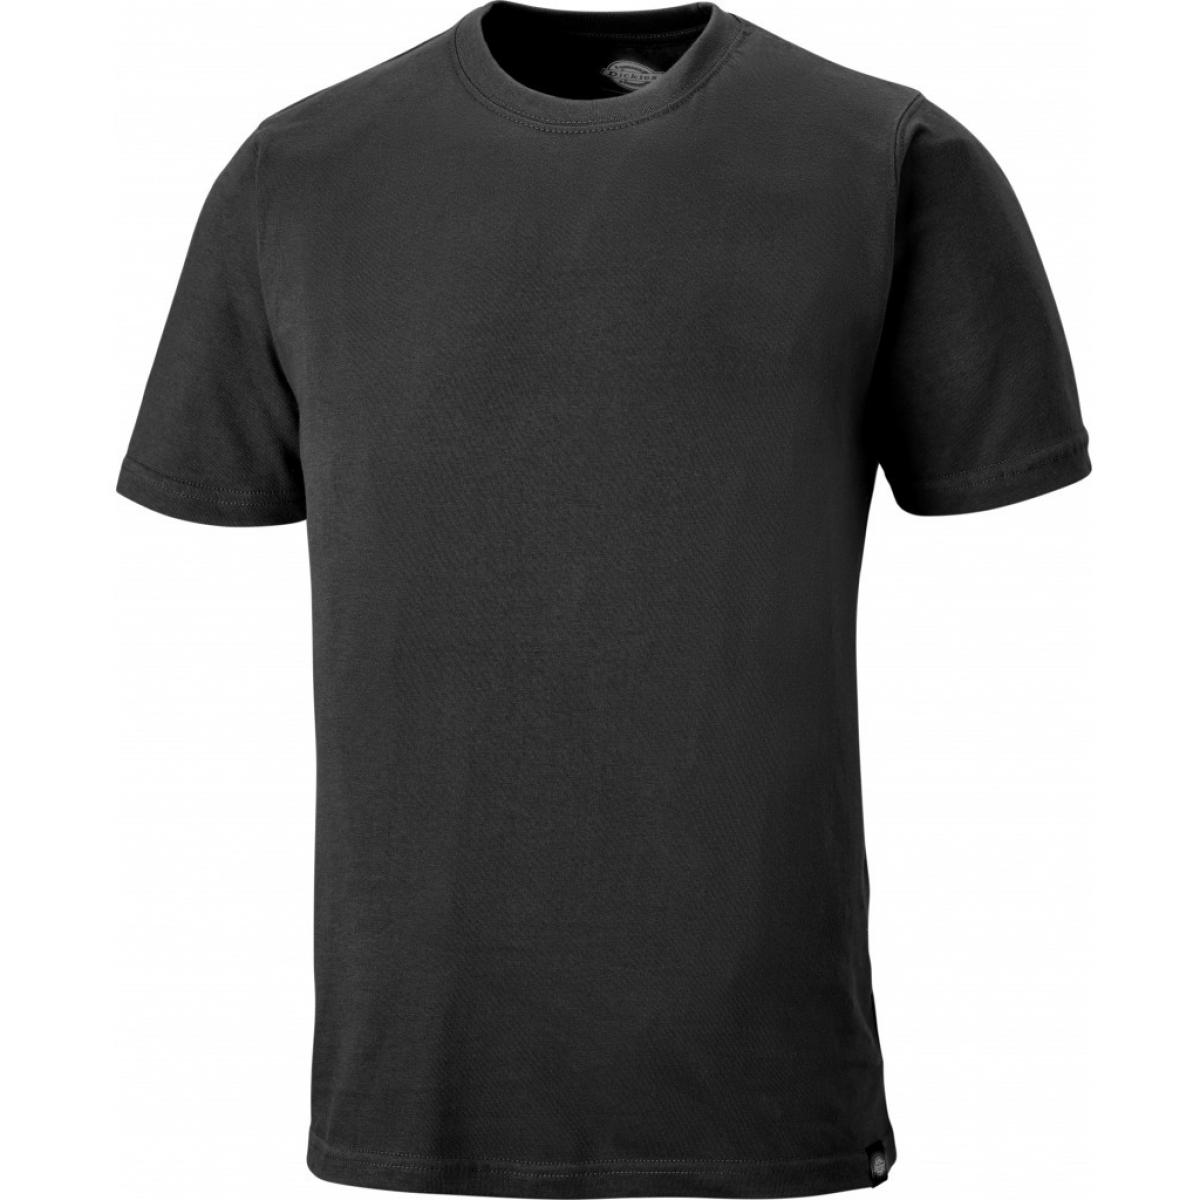 Hersteller: Dickies Herstellernummer: SH34225 Artikelbezeichnung: T-Shirt Farbe: Grau